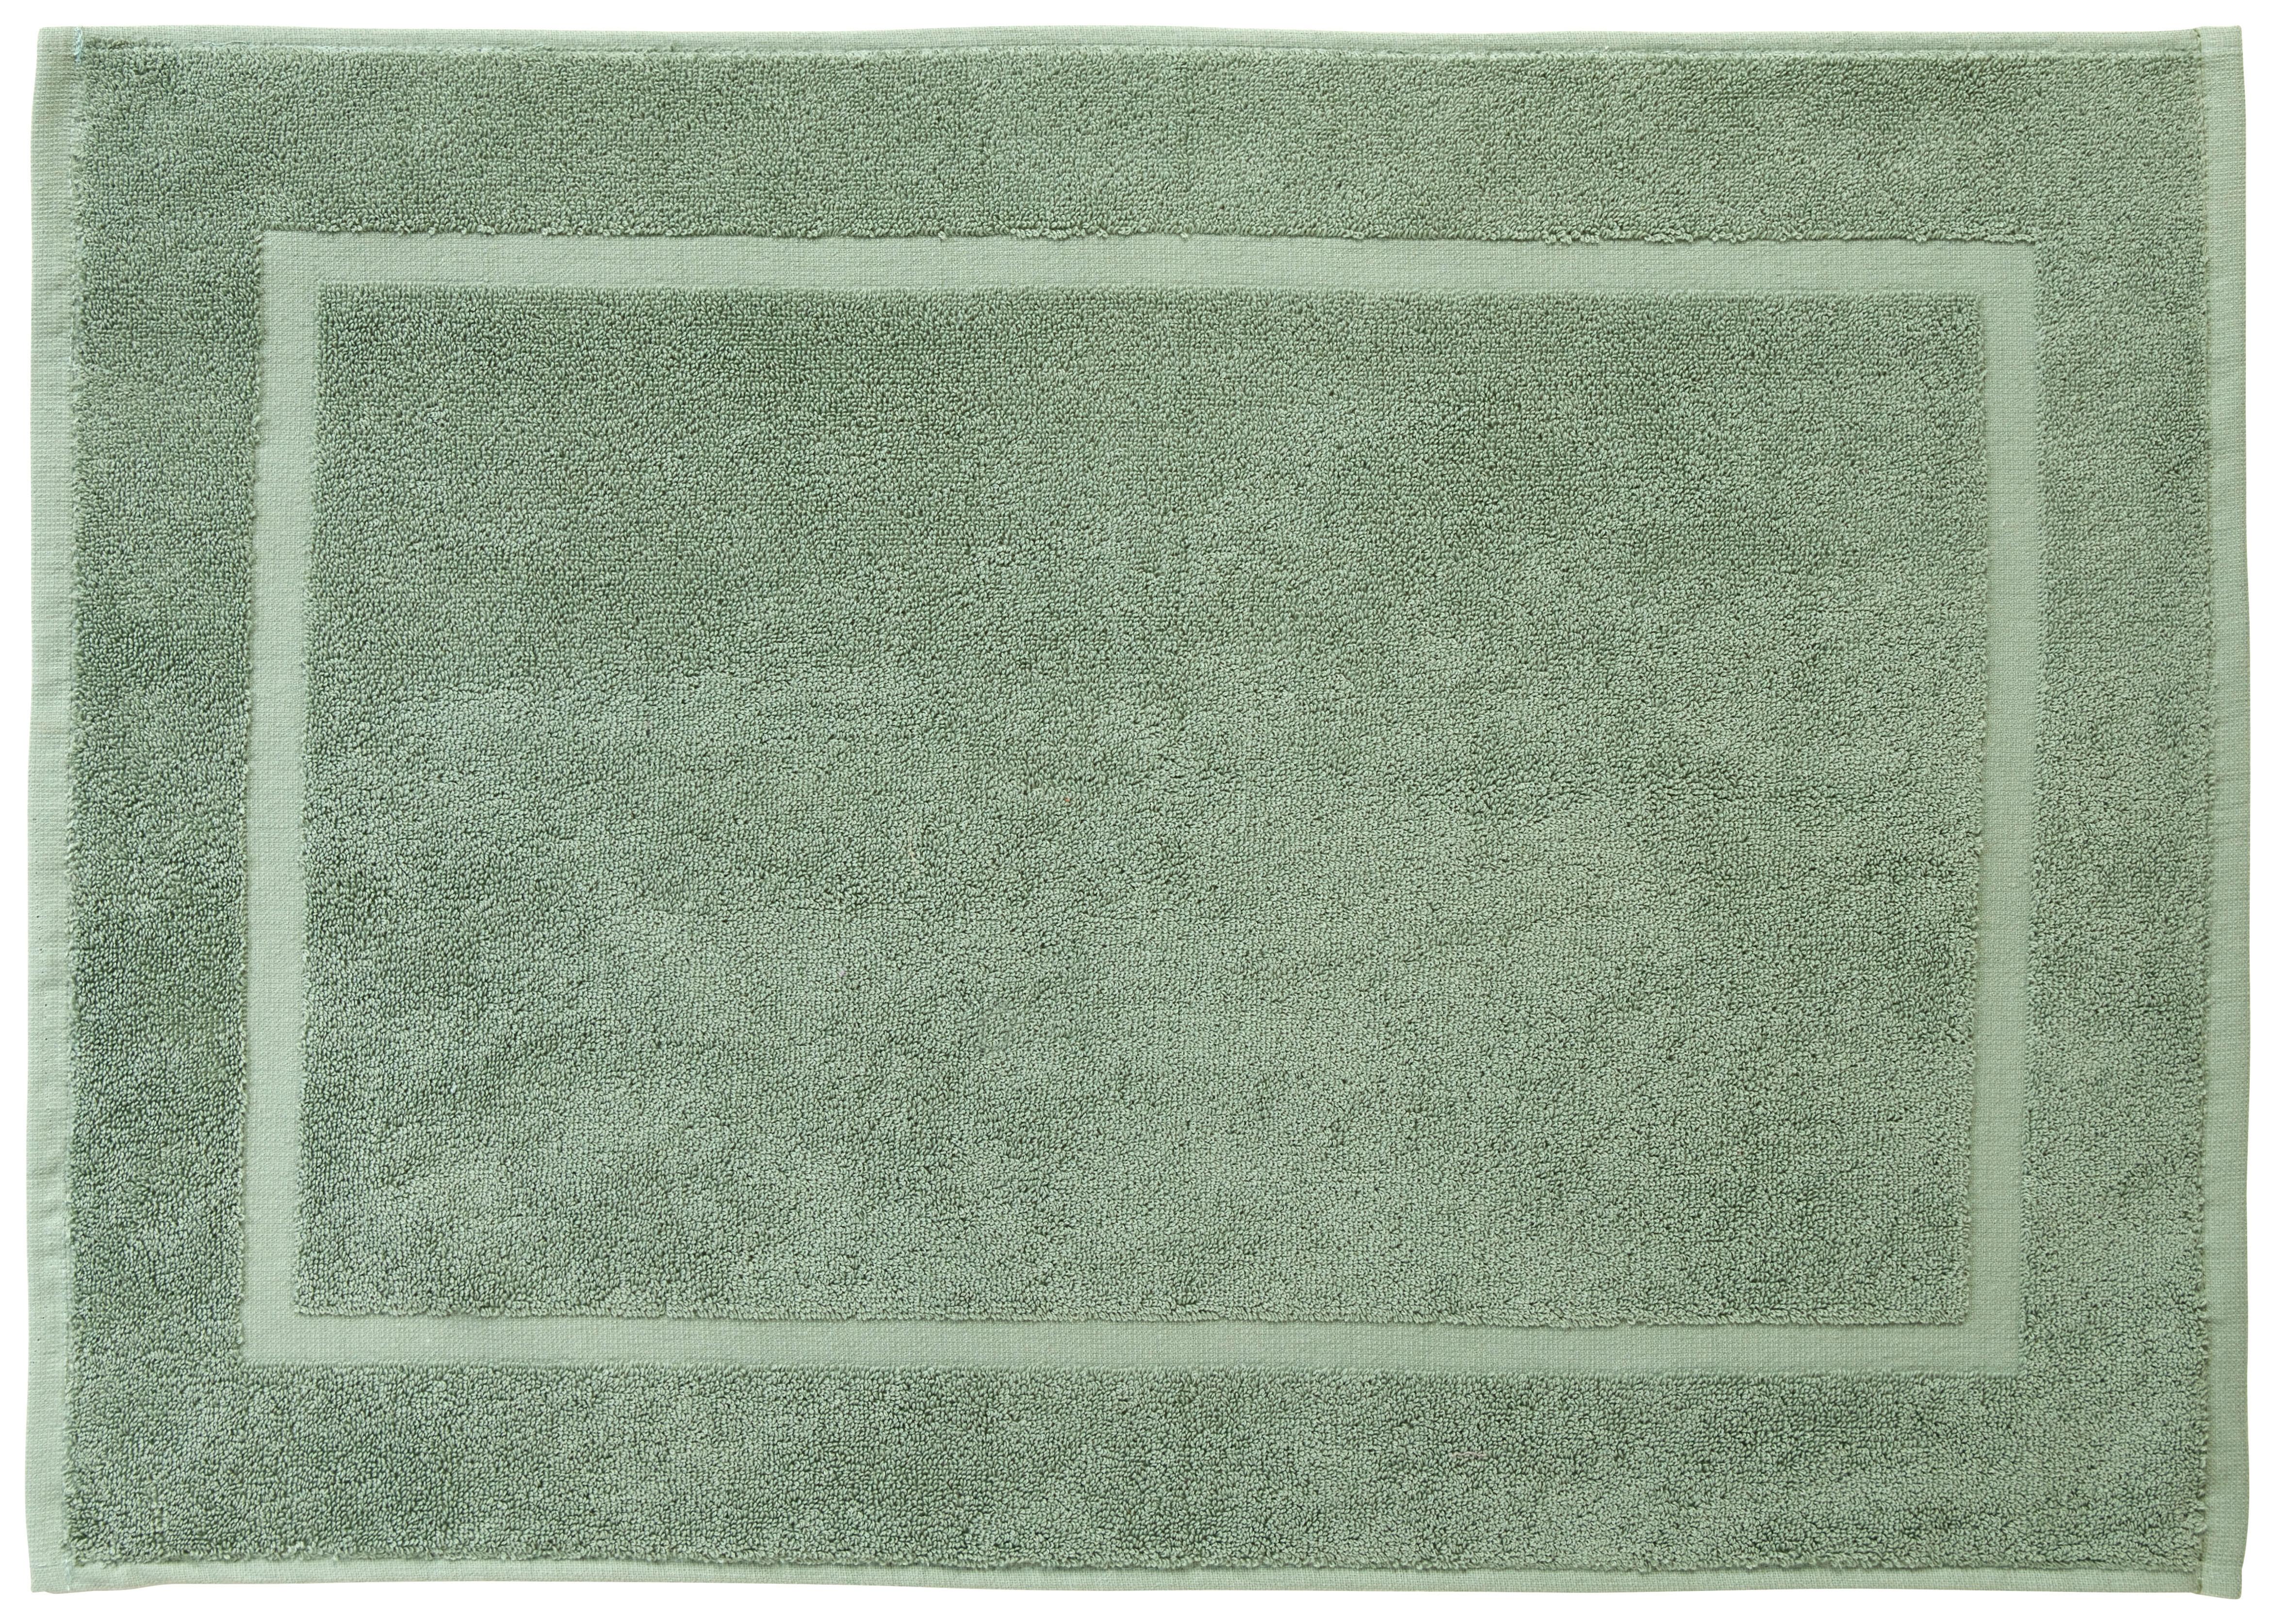 Fürdőszobaszőnyeg Melanie 50/70 - zöld, textil (50/70cm) - Modern Living